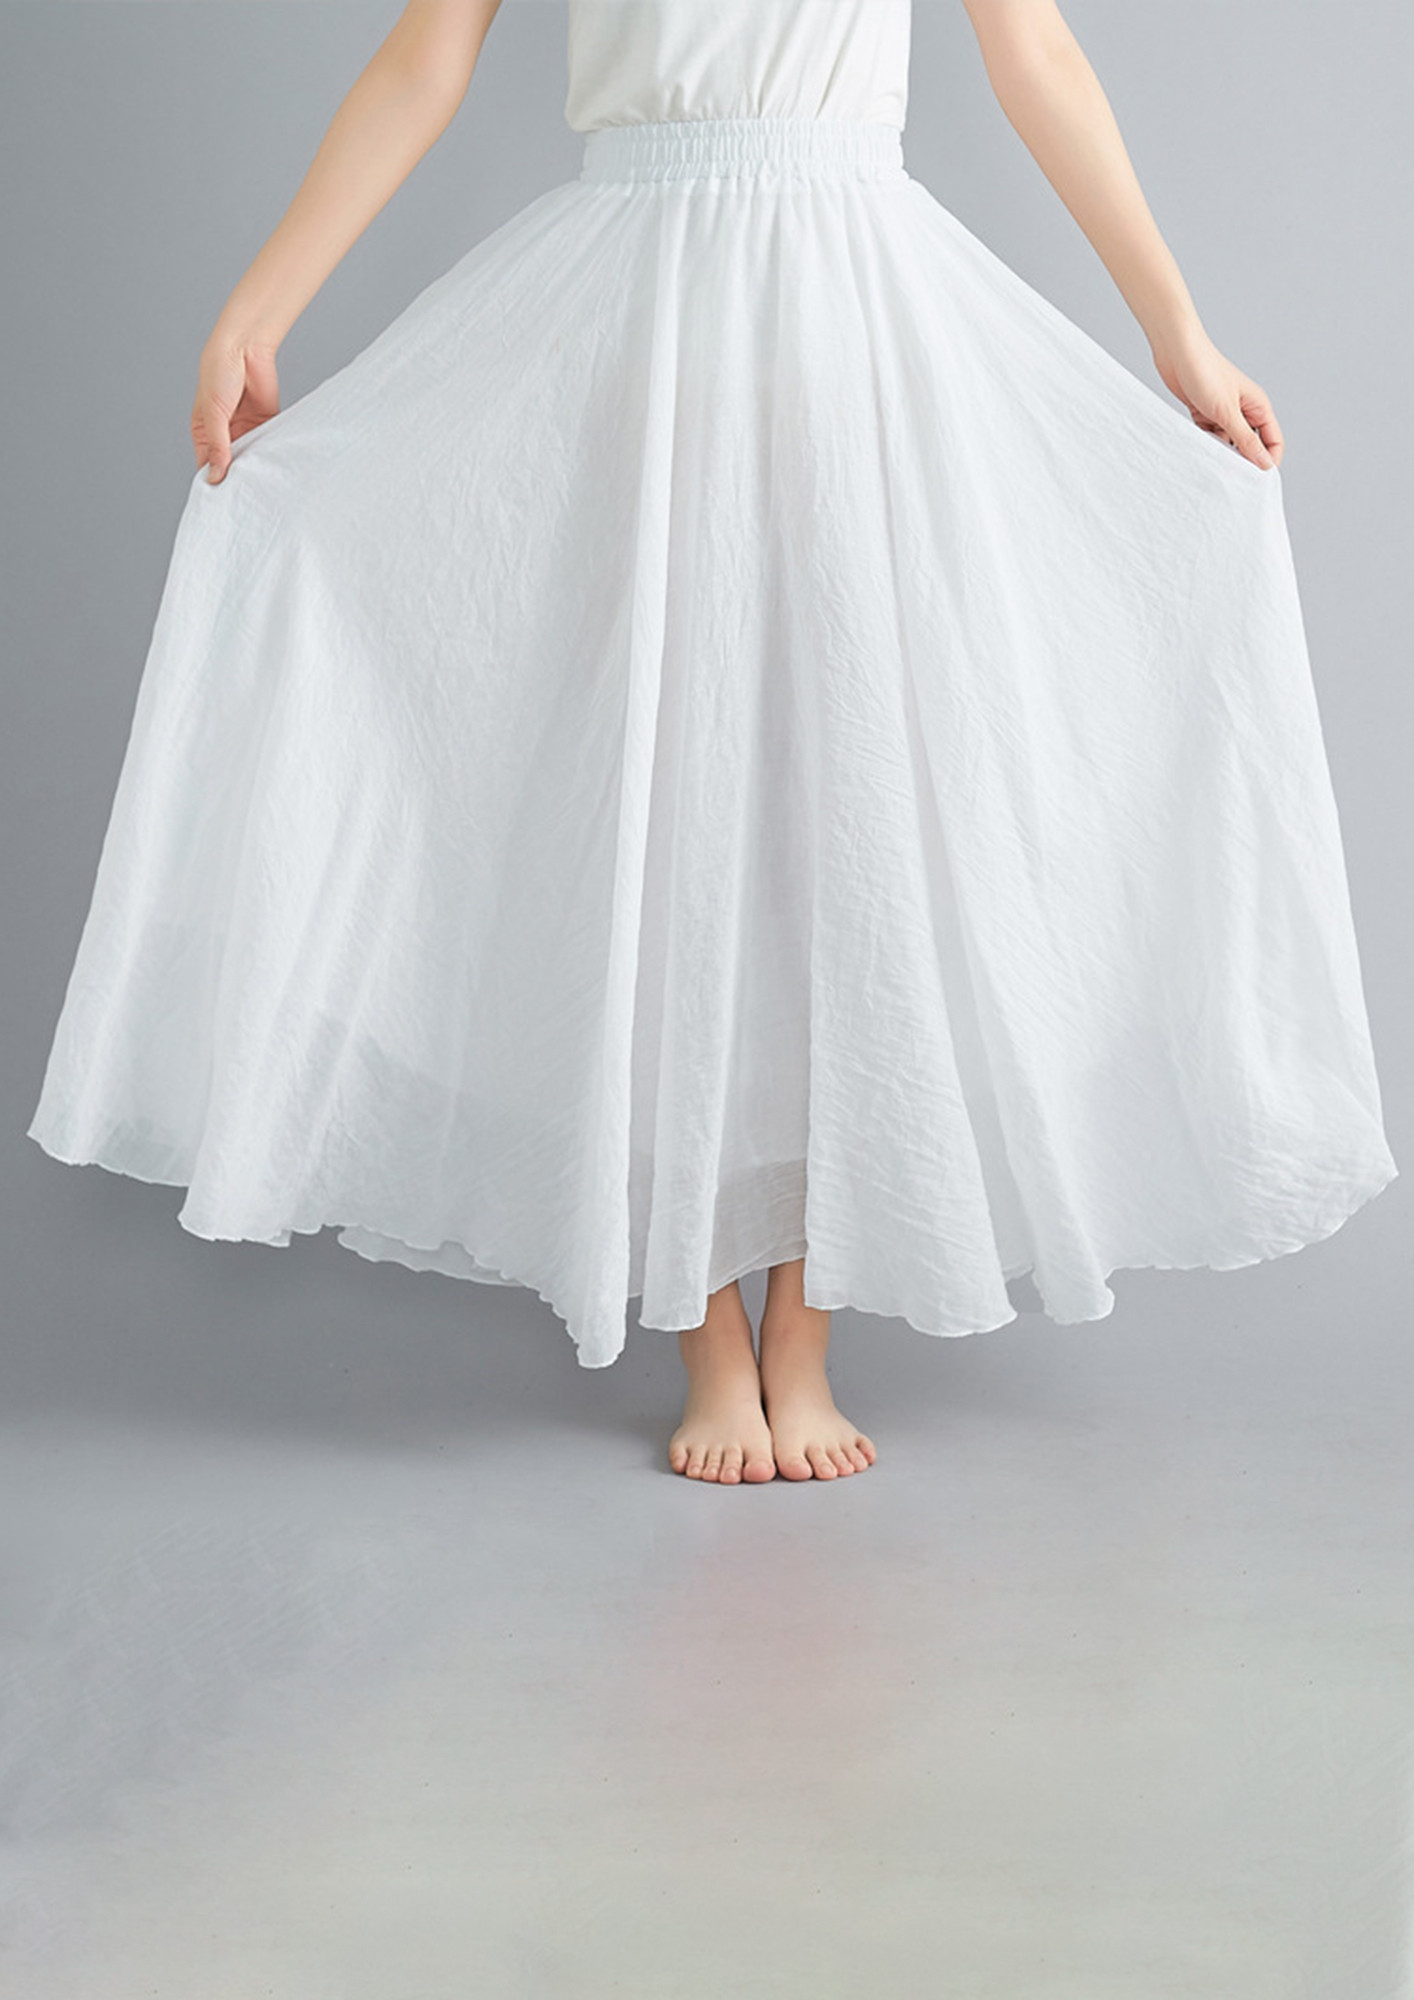 White Skirts | Long & Short White Skirts For Women | Next Ireland-suu.vn